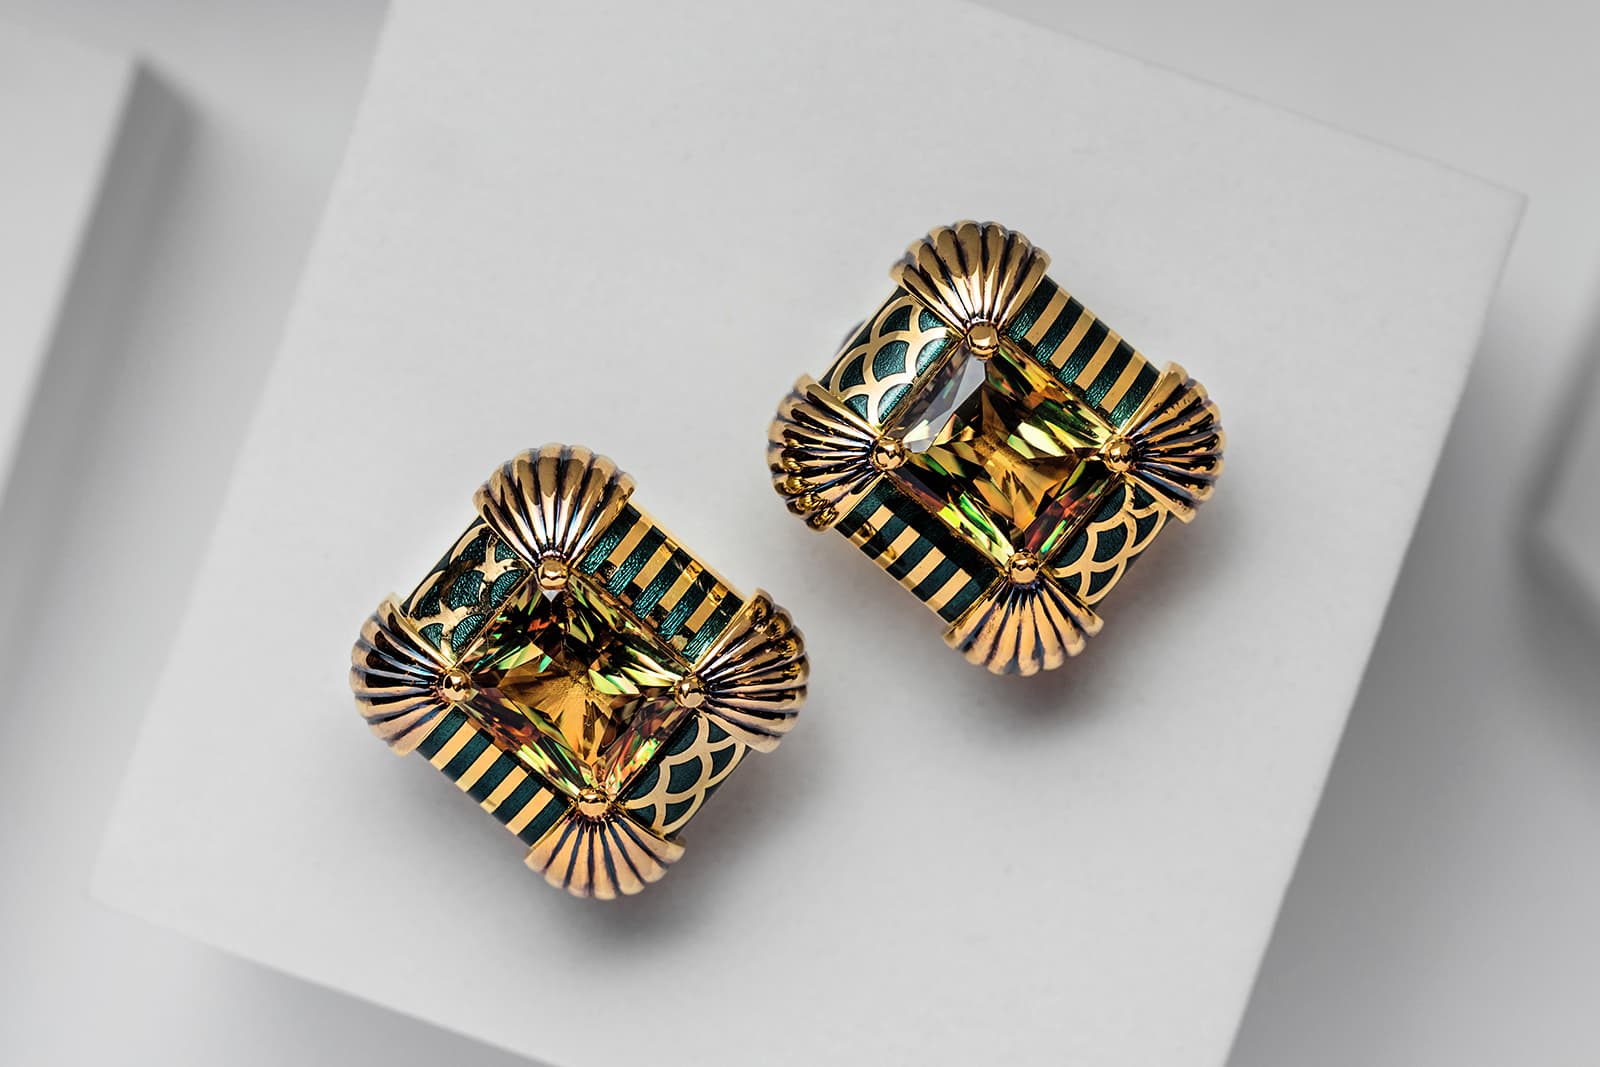 Серьги Izmestiev Diamonds The Sultan из золота и эмали с султанитом - редким драгоценным камнем, меняющим цвет, - из коллекции Japanese Garden